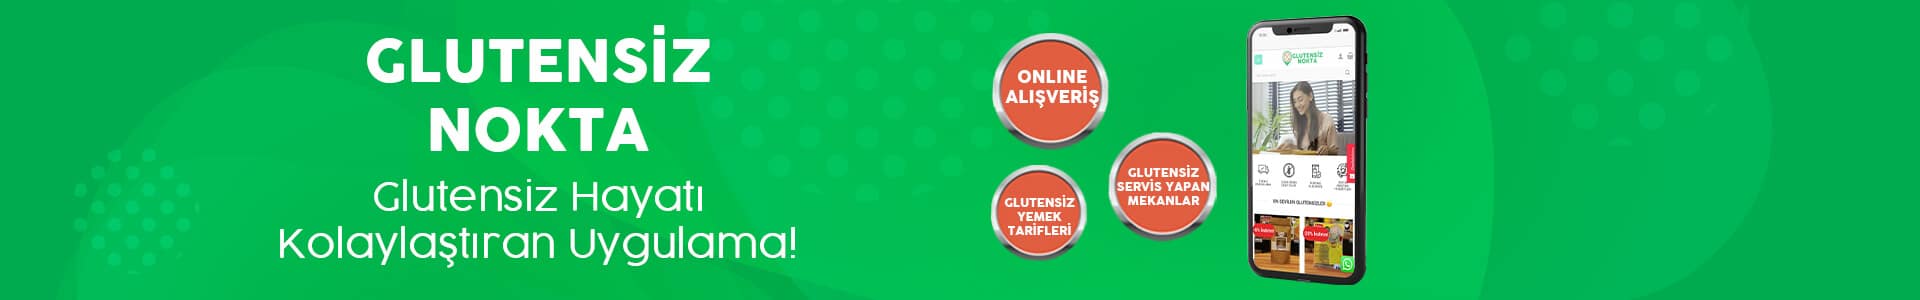 Glutensiz header website 1